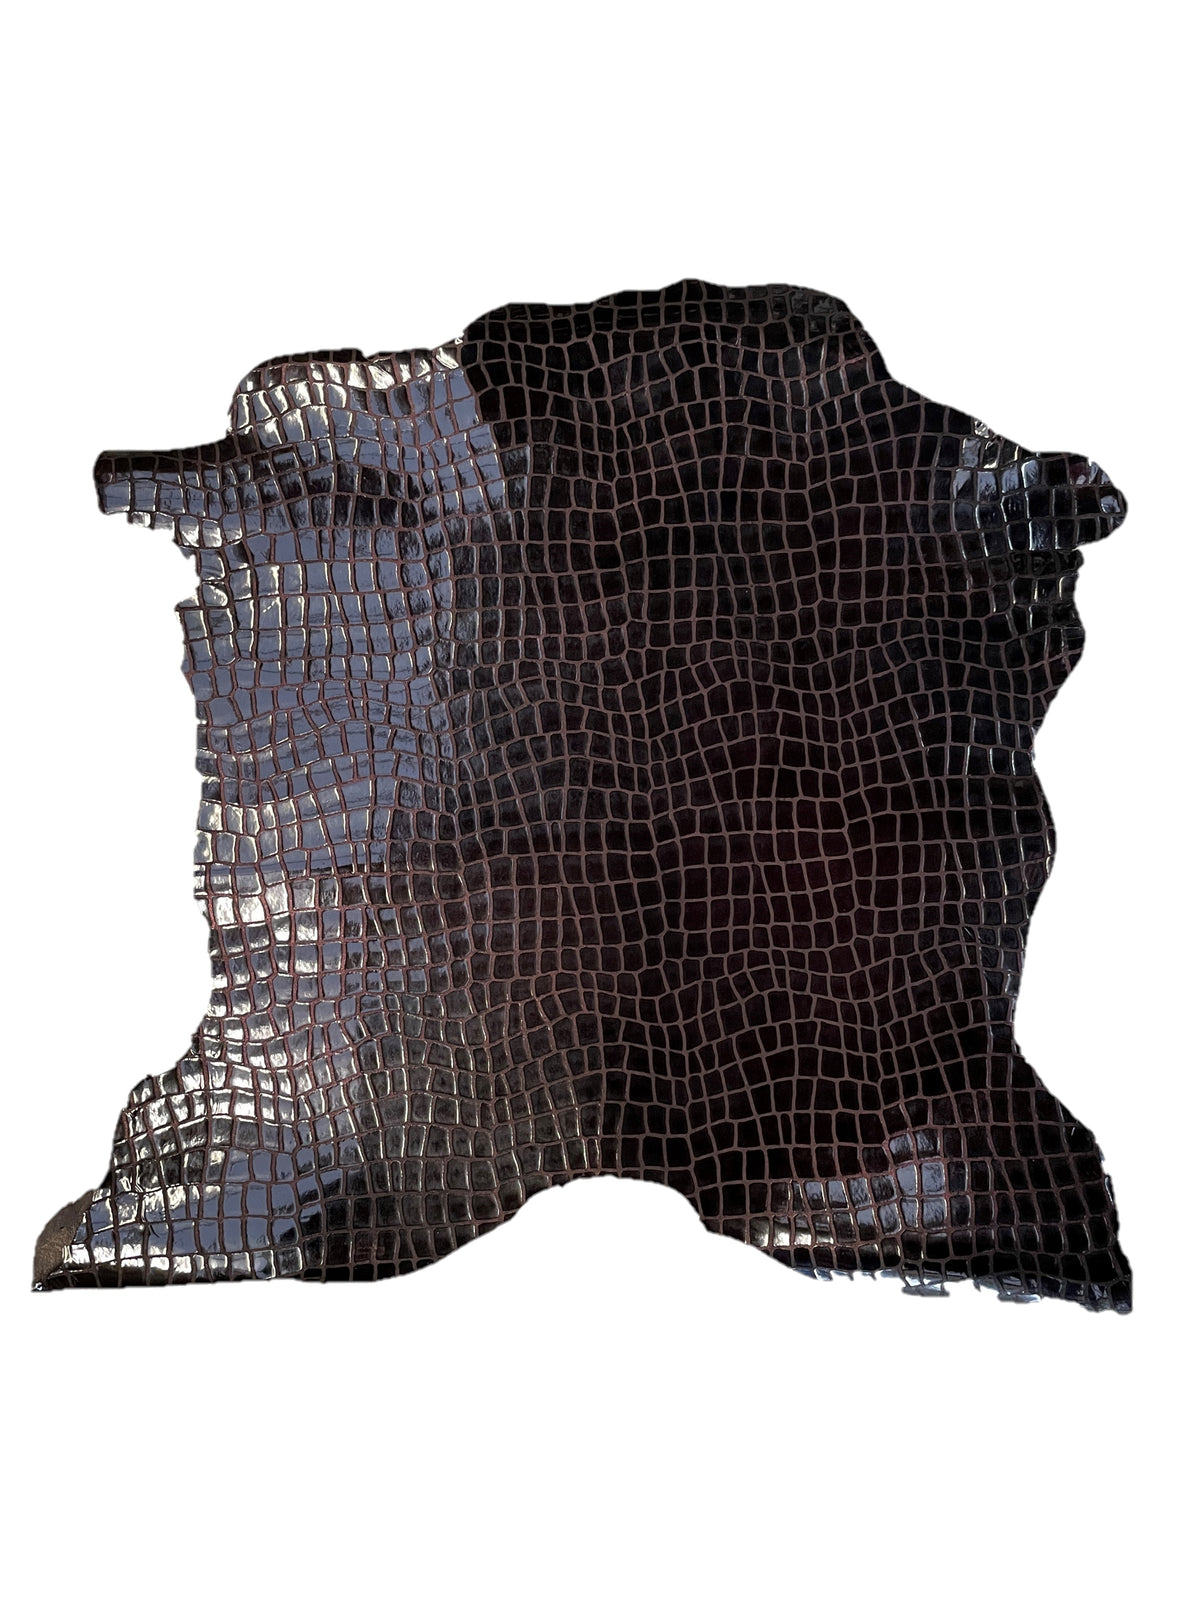 Crocodile Print Goat Skin | Burgundy | 0.6mm | 2 - 3 sq.ft | $20 ea.